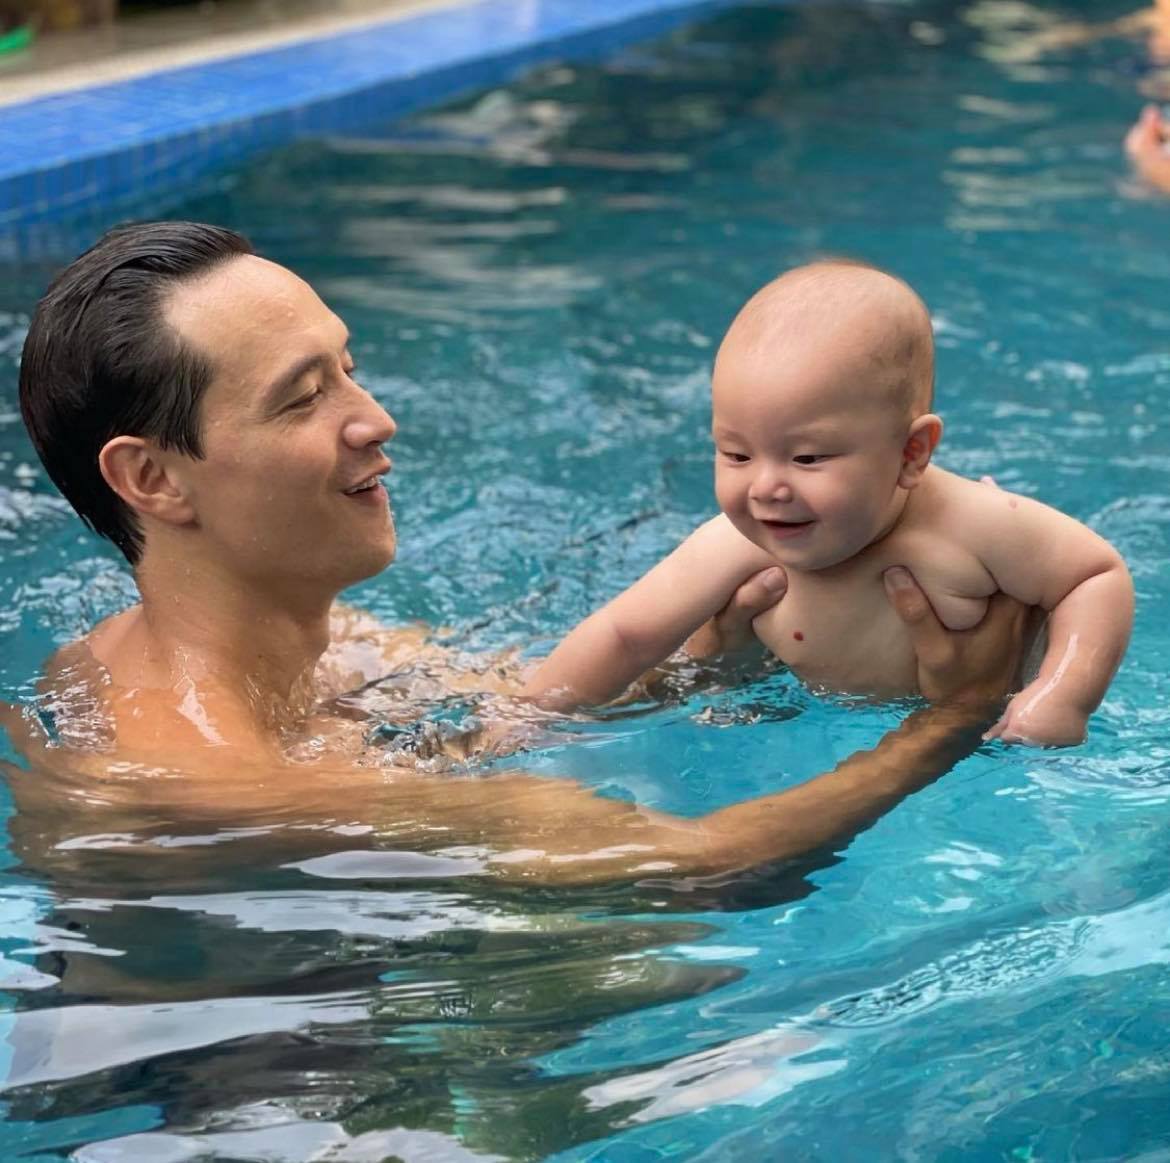 Kim Lý dạy con trai Leon bơi lội cuối tuần. Hình ảnh ông bố điển trai chơi đùa cùng con trai cưng bụ bẫm khiến ai nấy xuýt xoa, ngưỡng mộ.